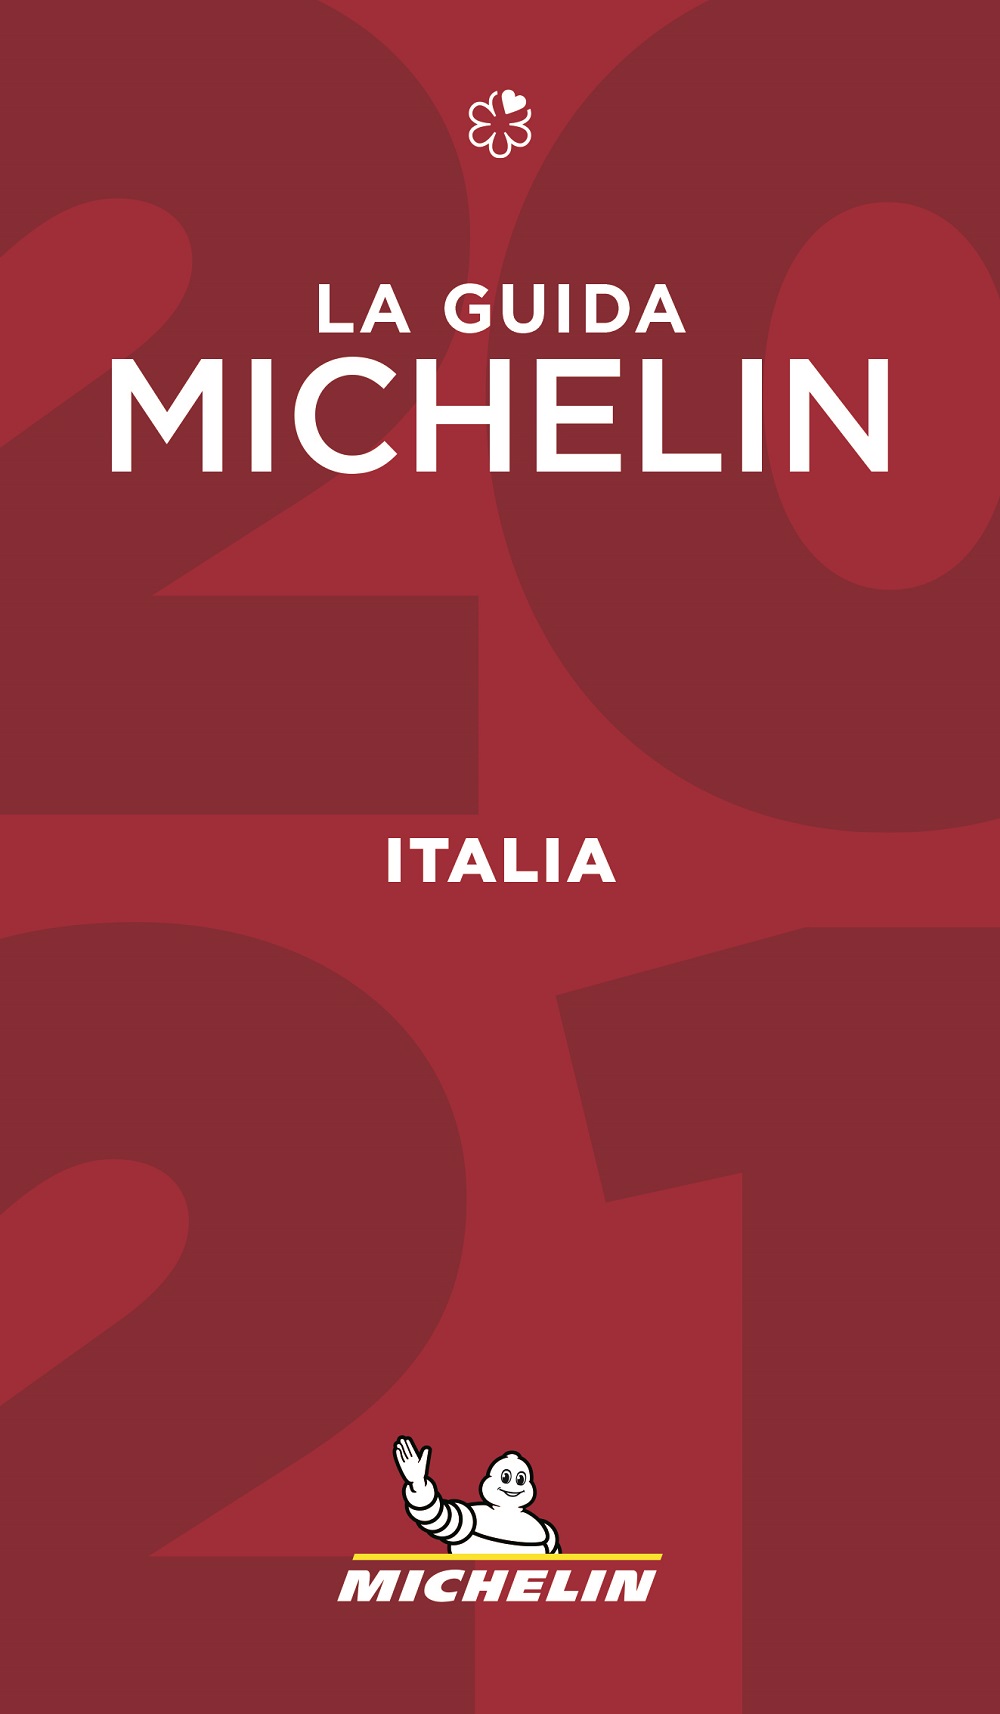 Debutta anche la stella verde tra le nuove stelle della Guida Michelin Italia 2021